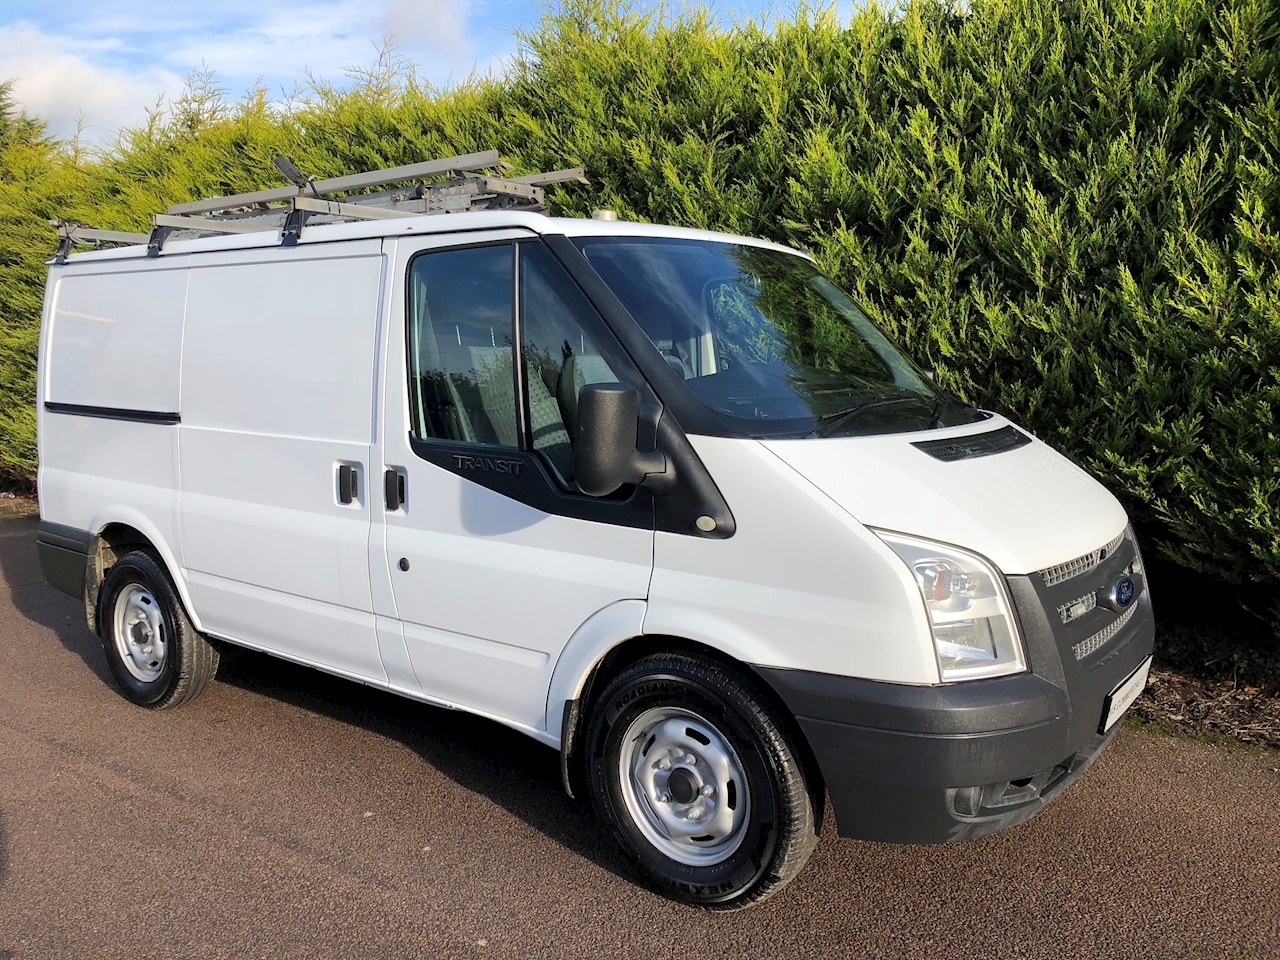 4x4 van for sale uk